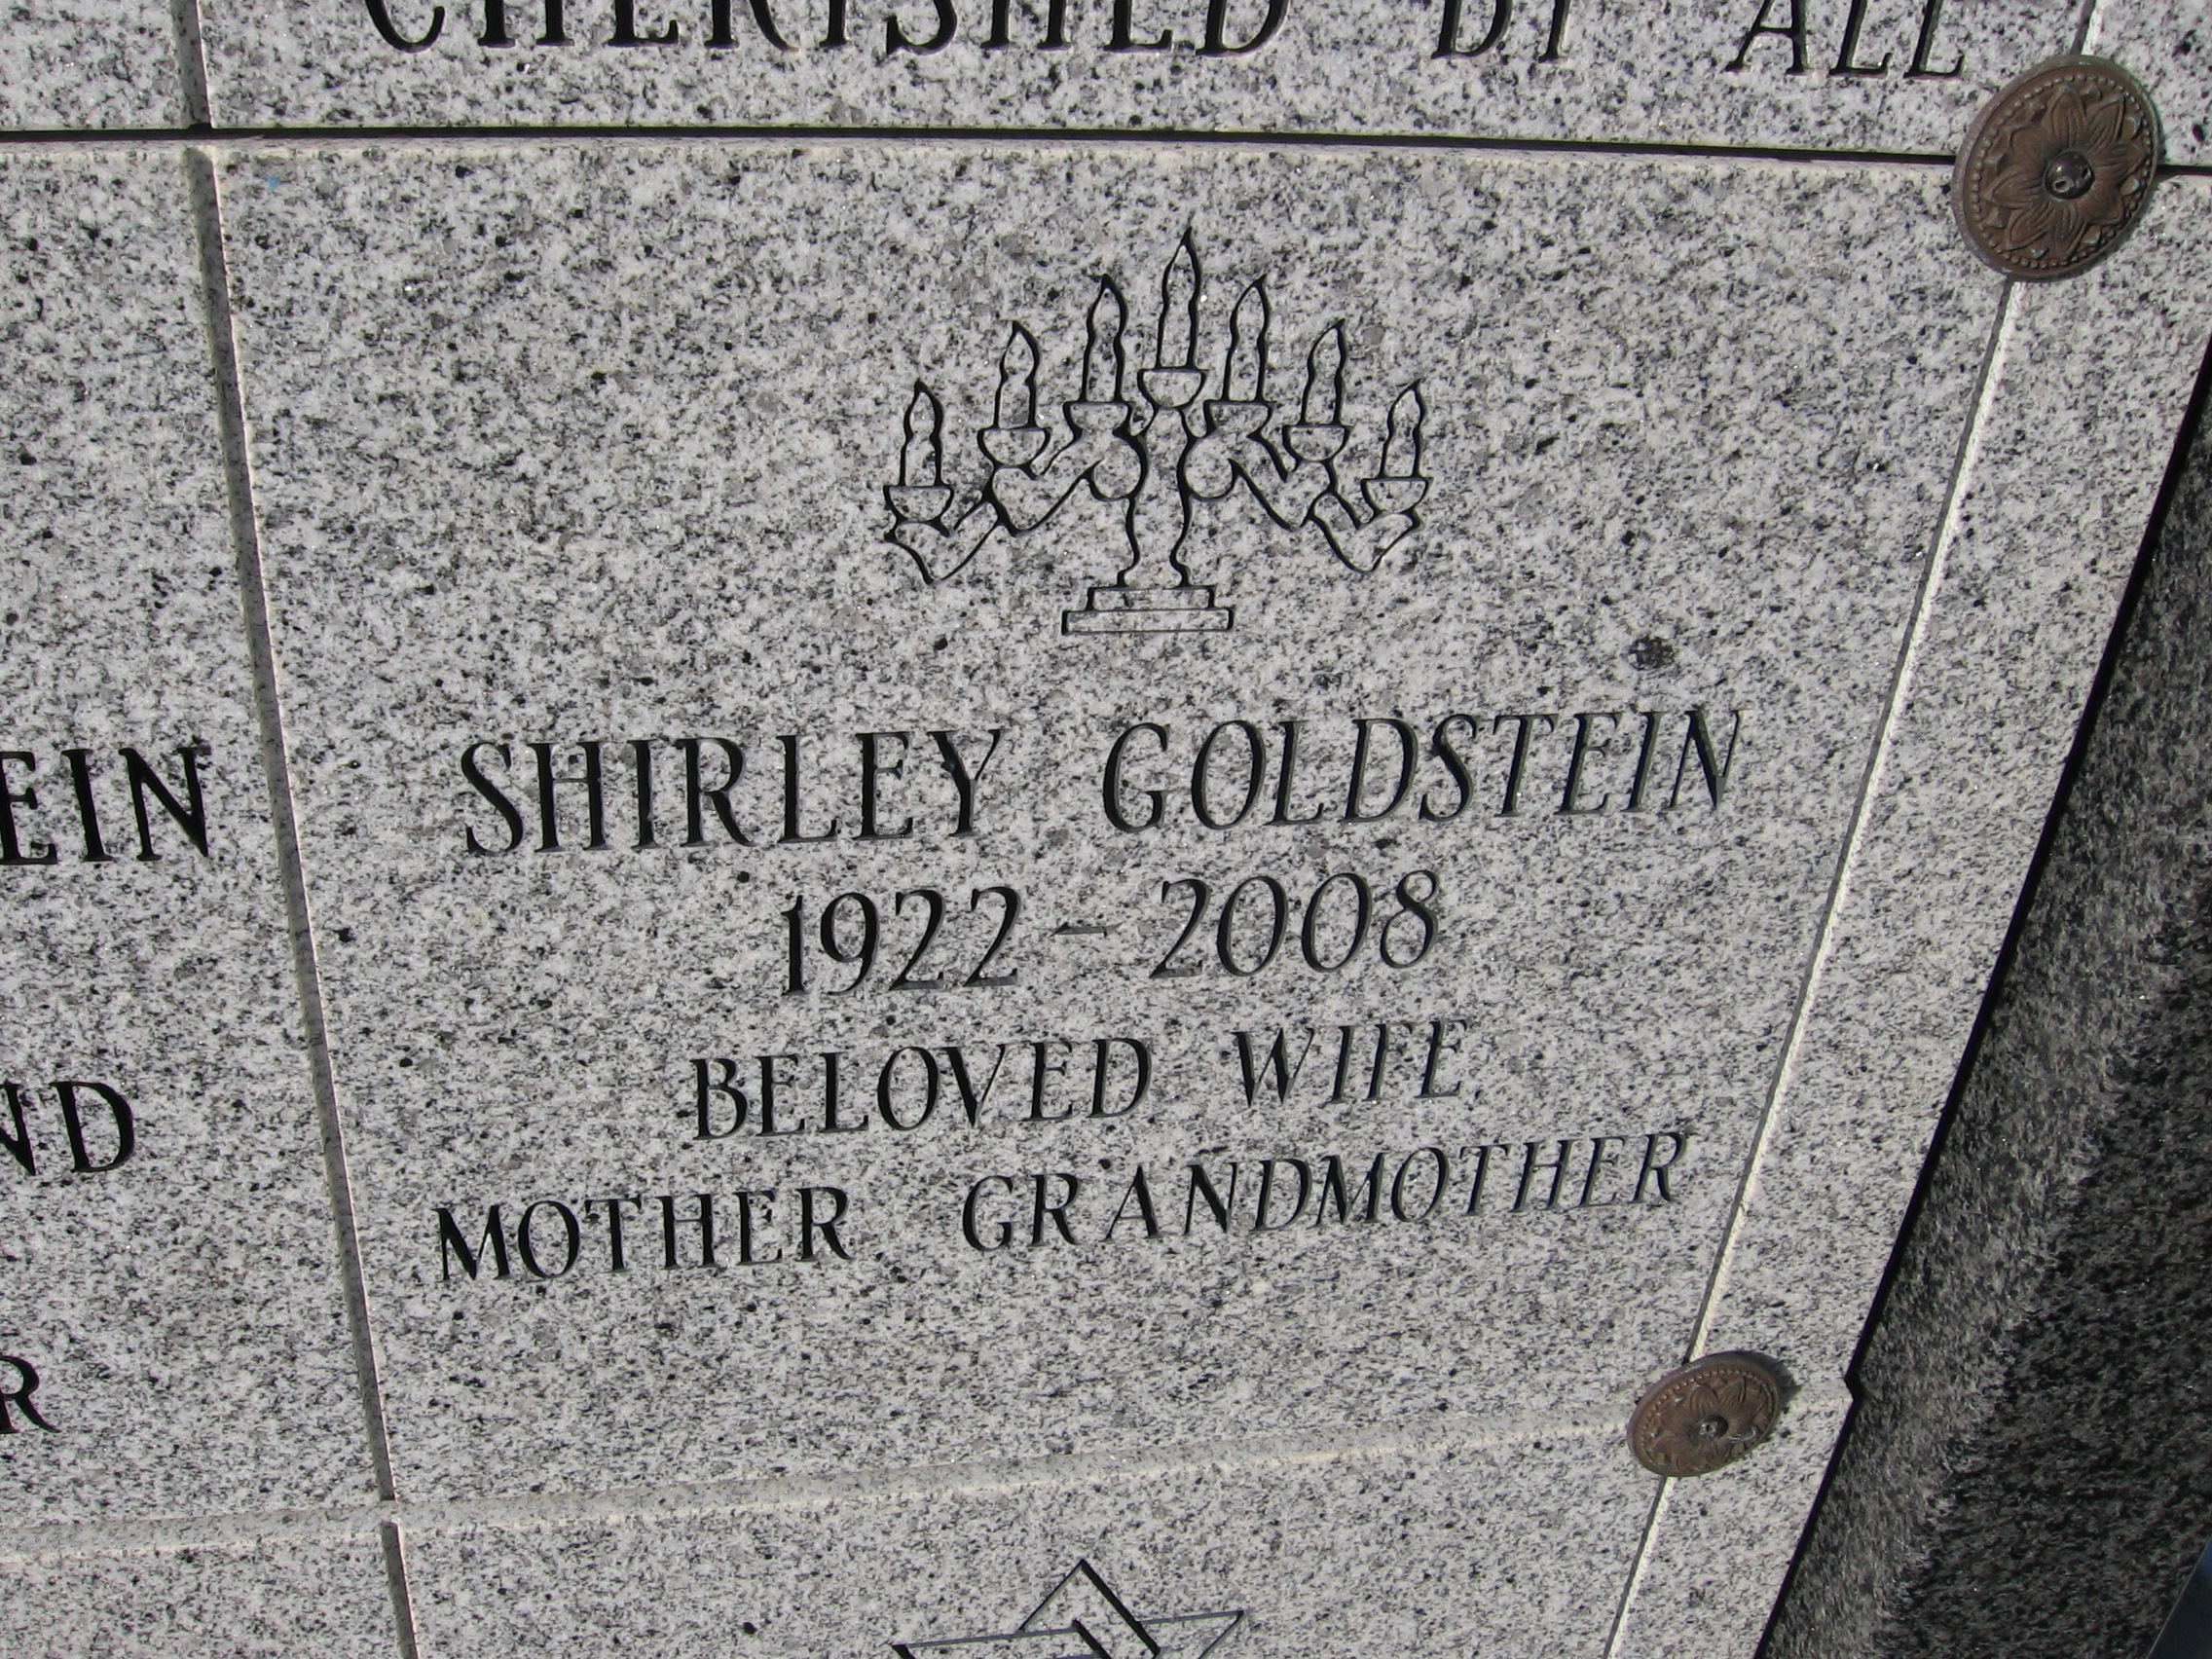 Shirley Goldstein